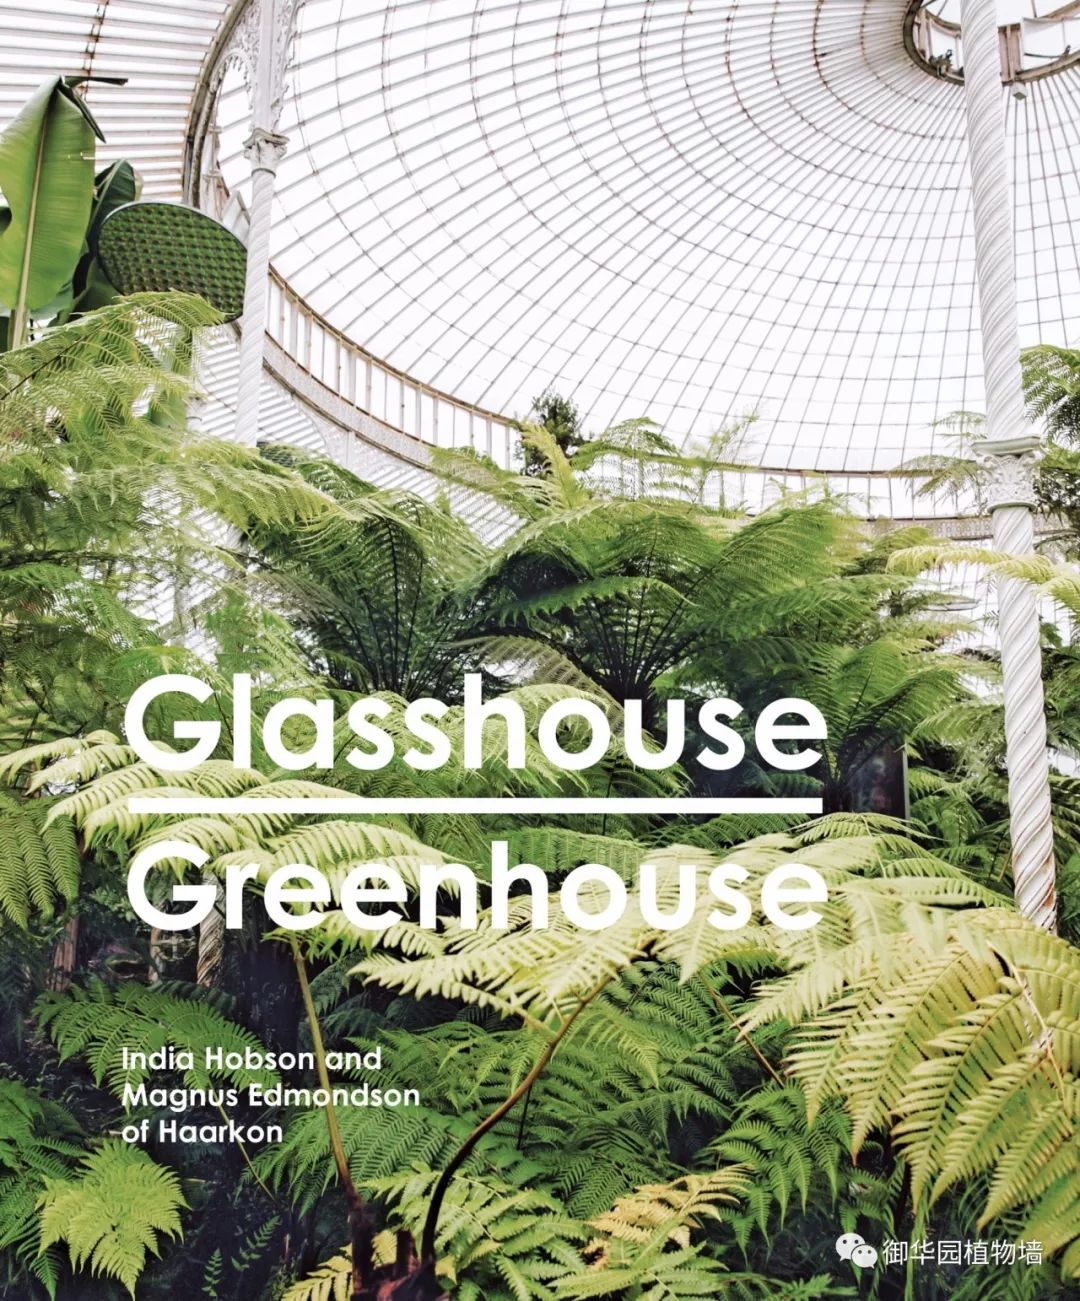 新书推荐 ┃《glasshouse greenhouse》,一本关于温室